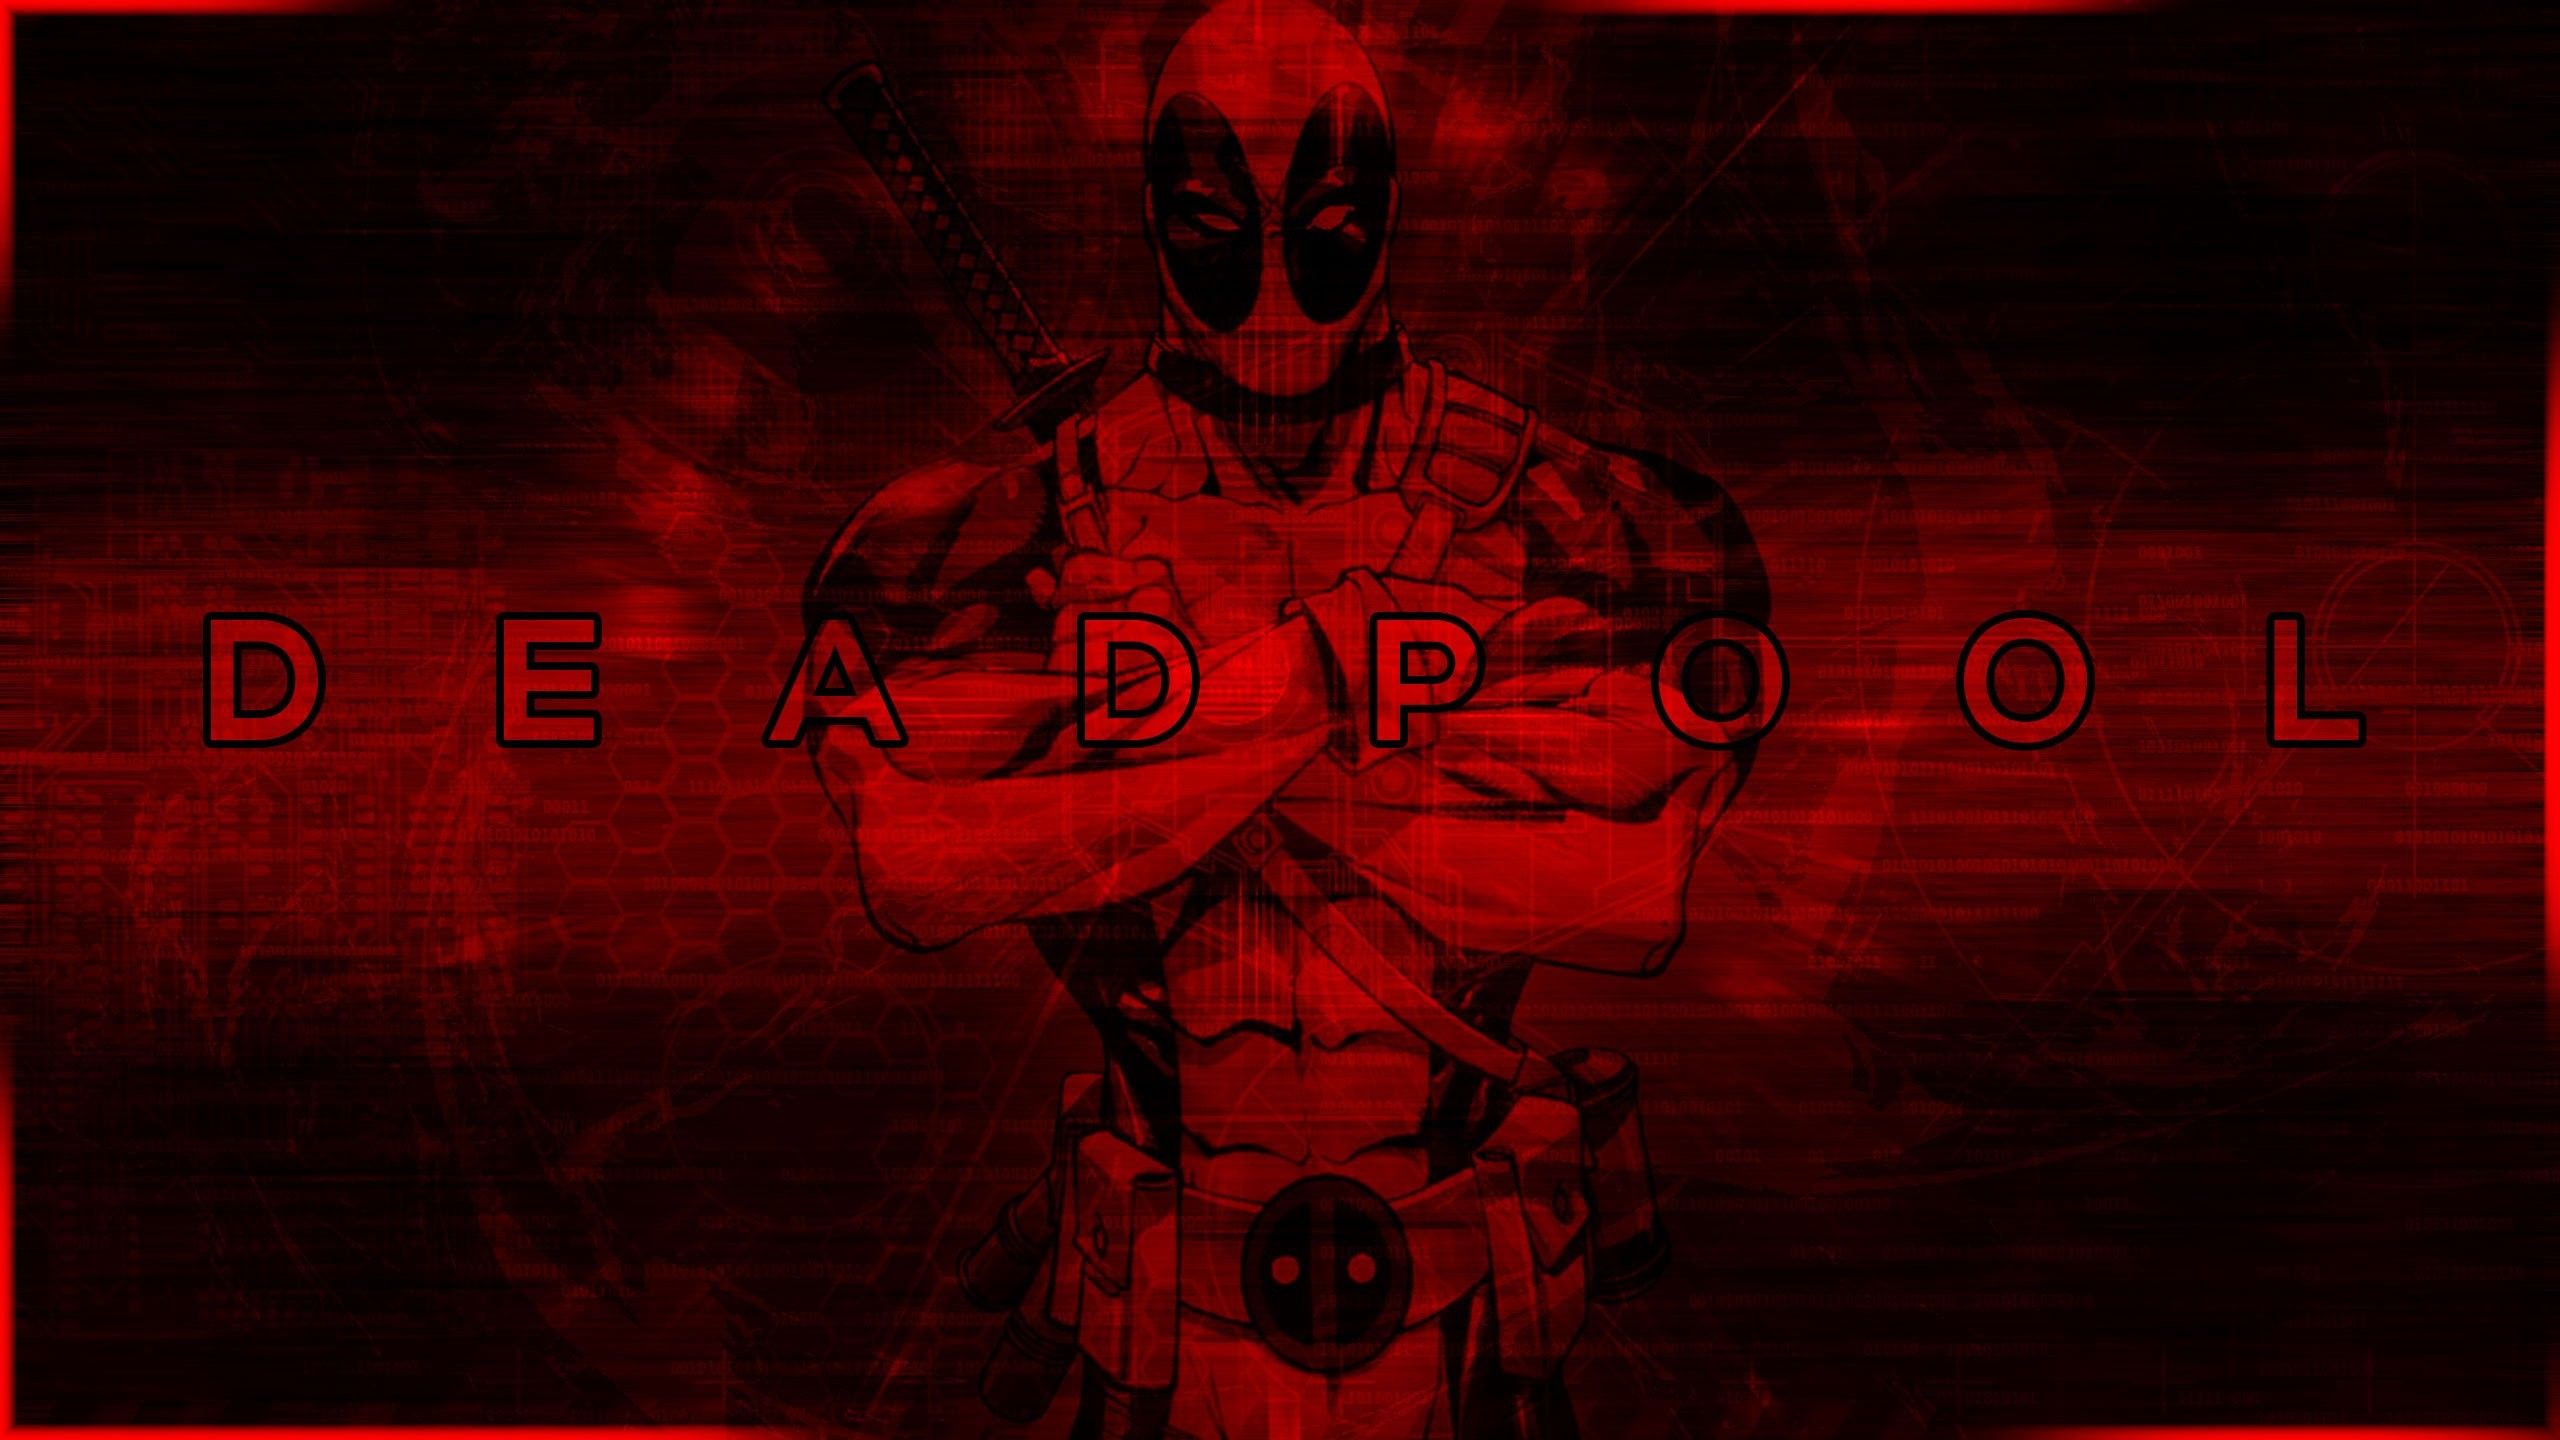  Deadpool Hintergrundbild 2560x1440. Deadpool wallpaper 4k ideas. Arte de chisisto, Que es deadpool and Deadpool pelicula